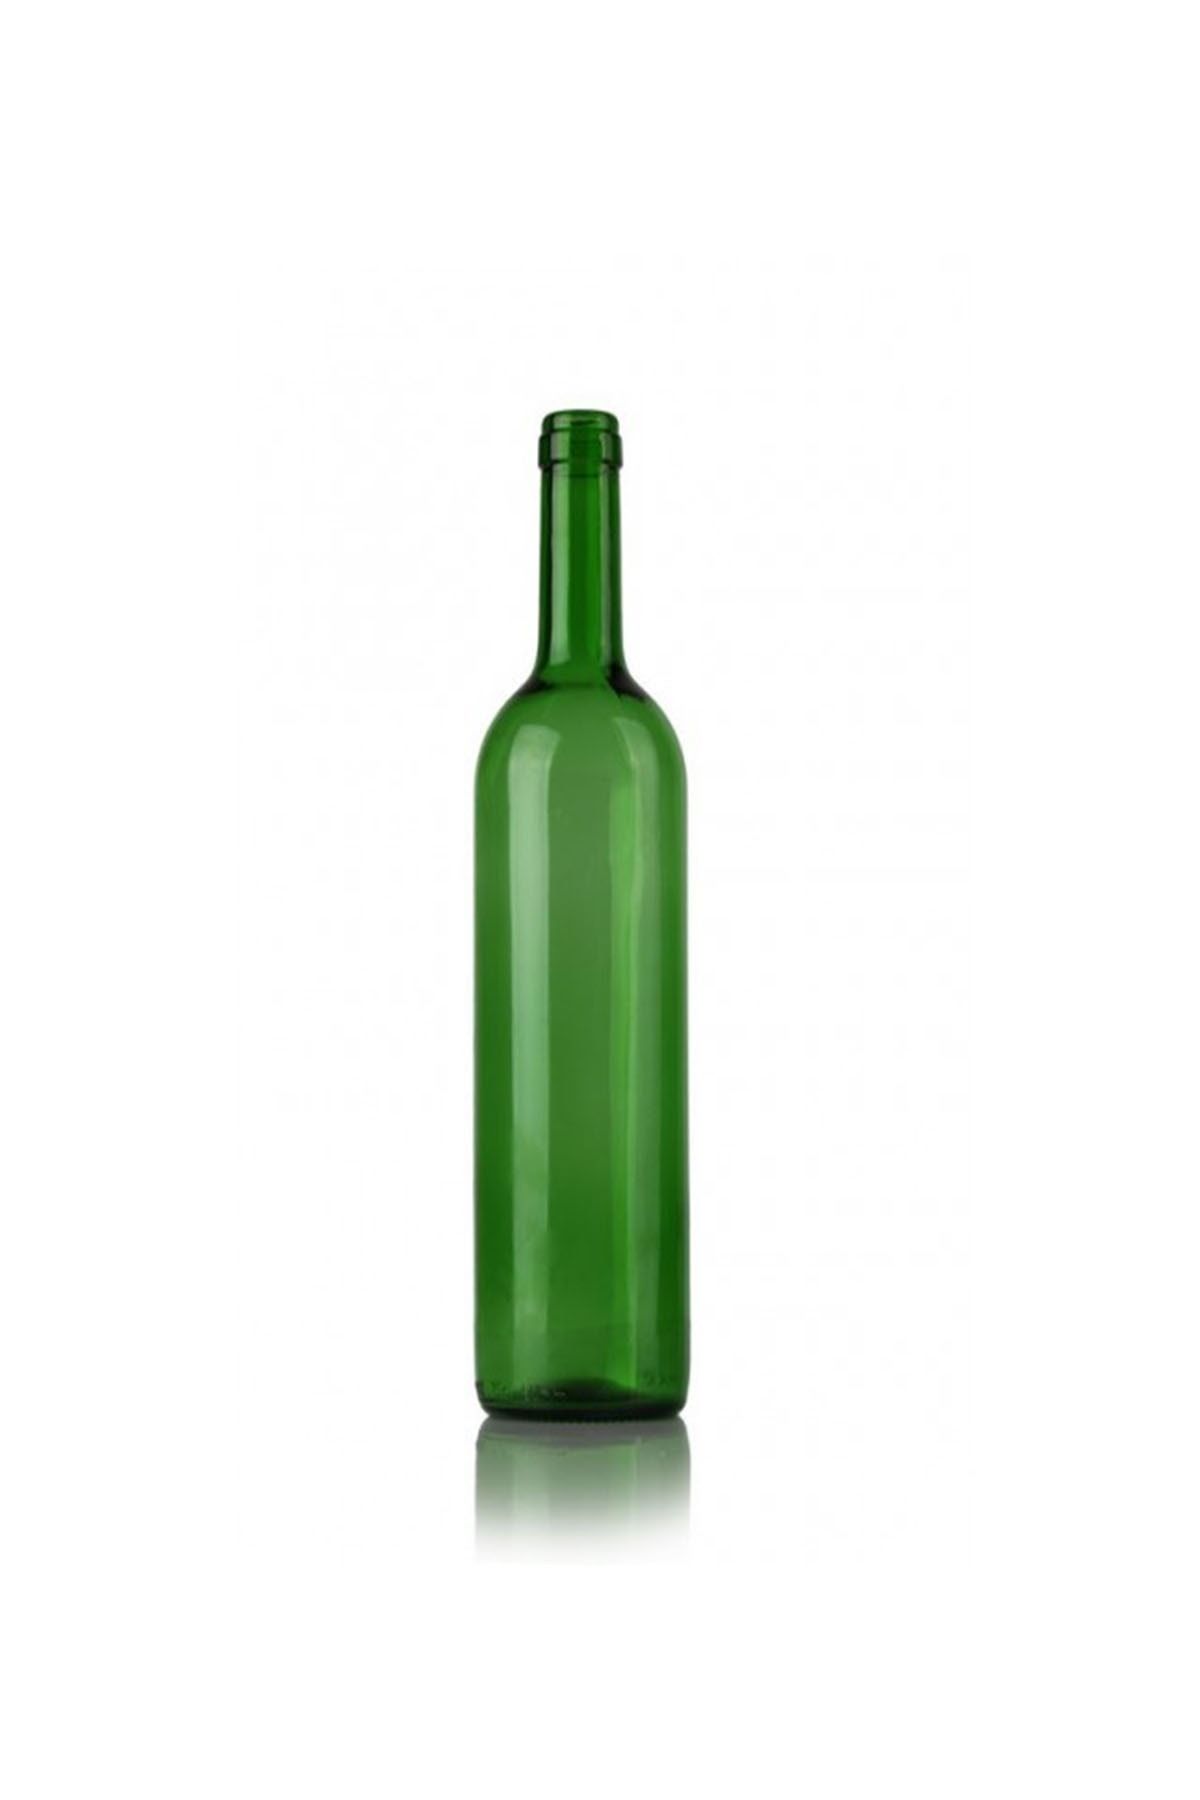 yeni11 35 Adet Zümrüt Yeşili Yağ Veya Şarap Şişesi Mantar Kapaklı